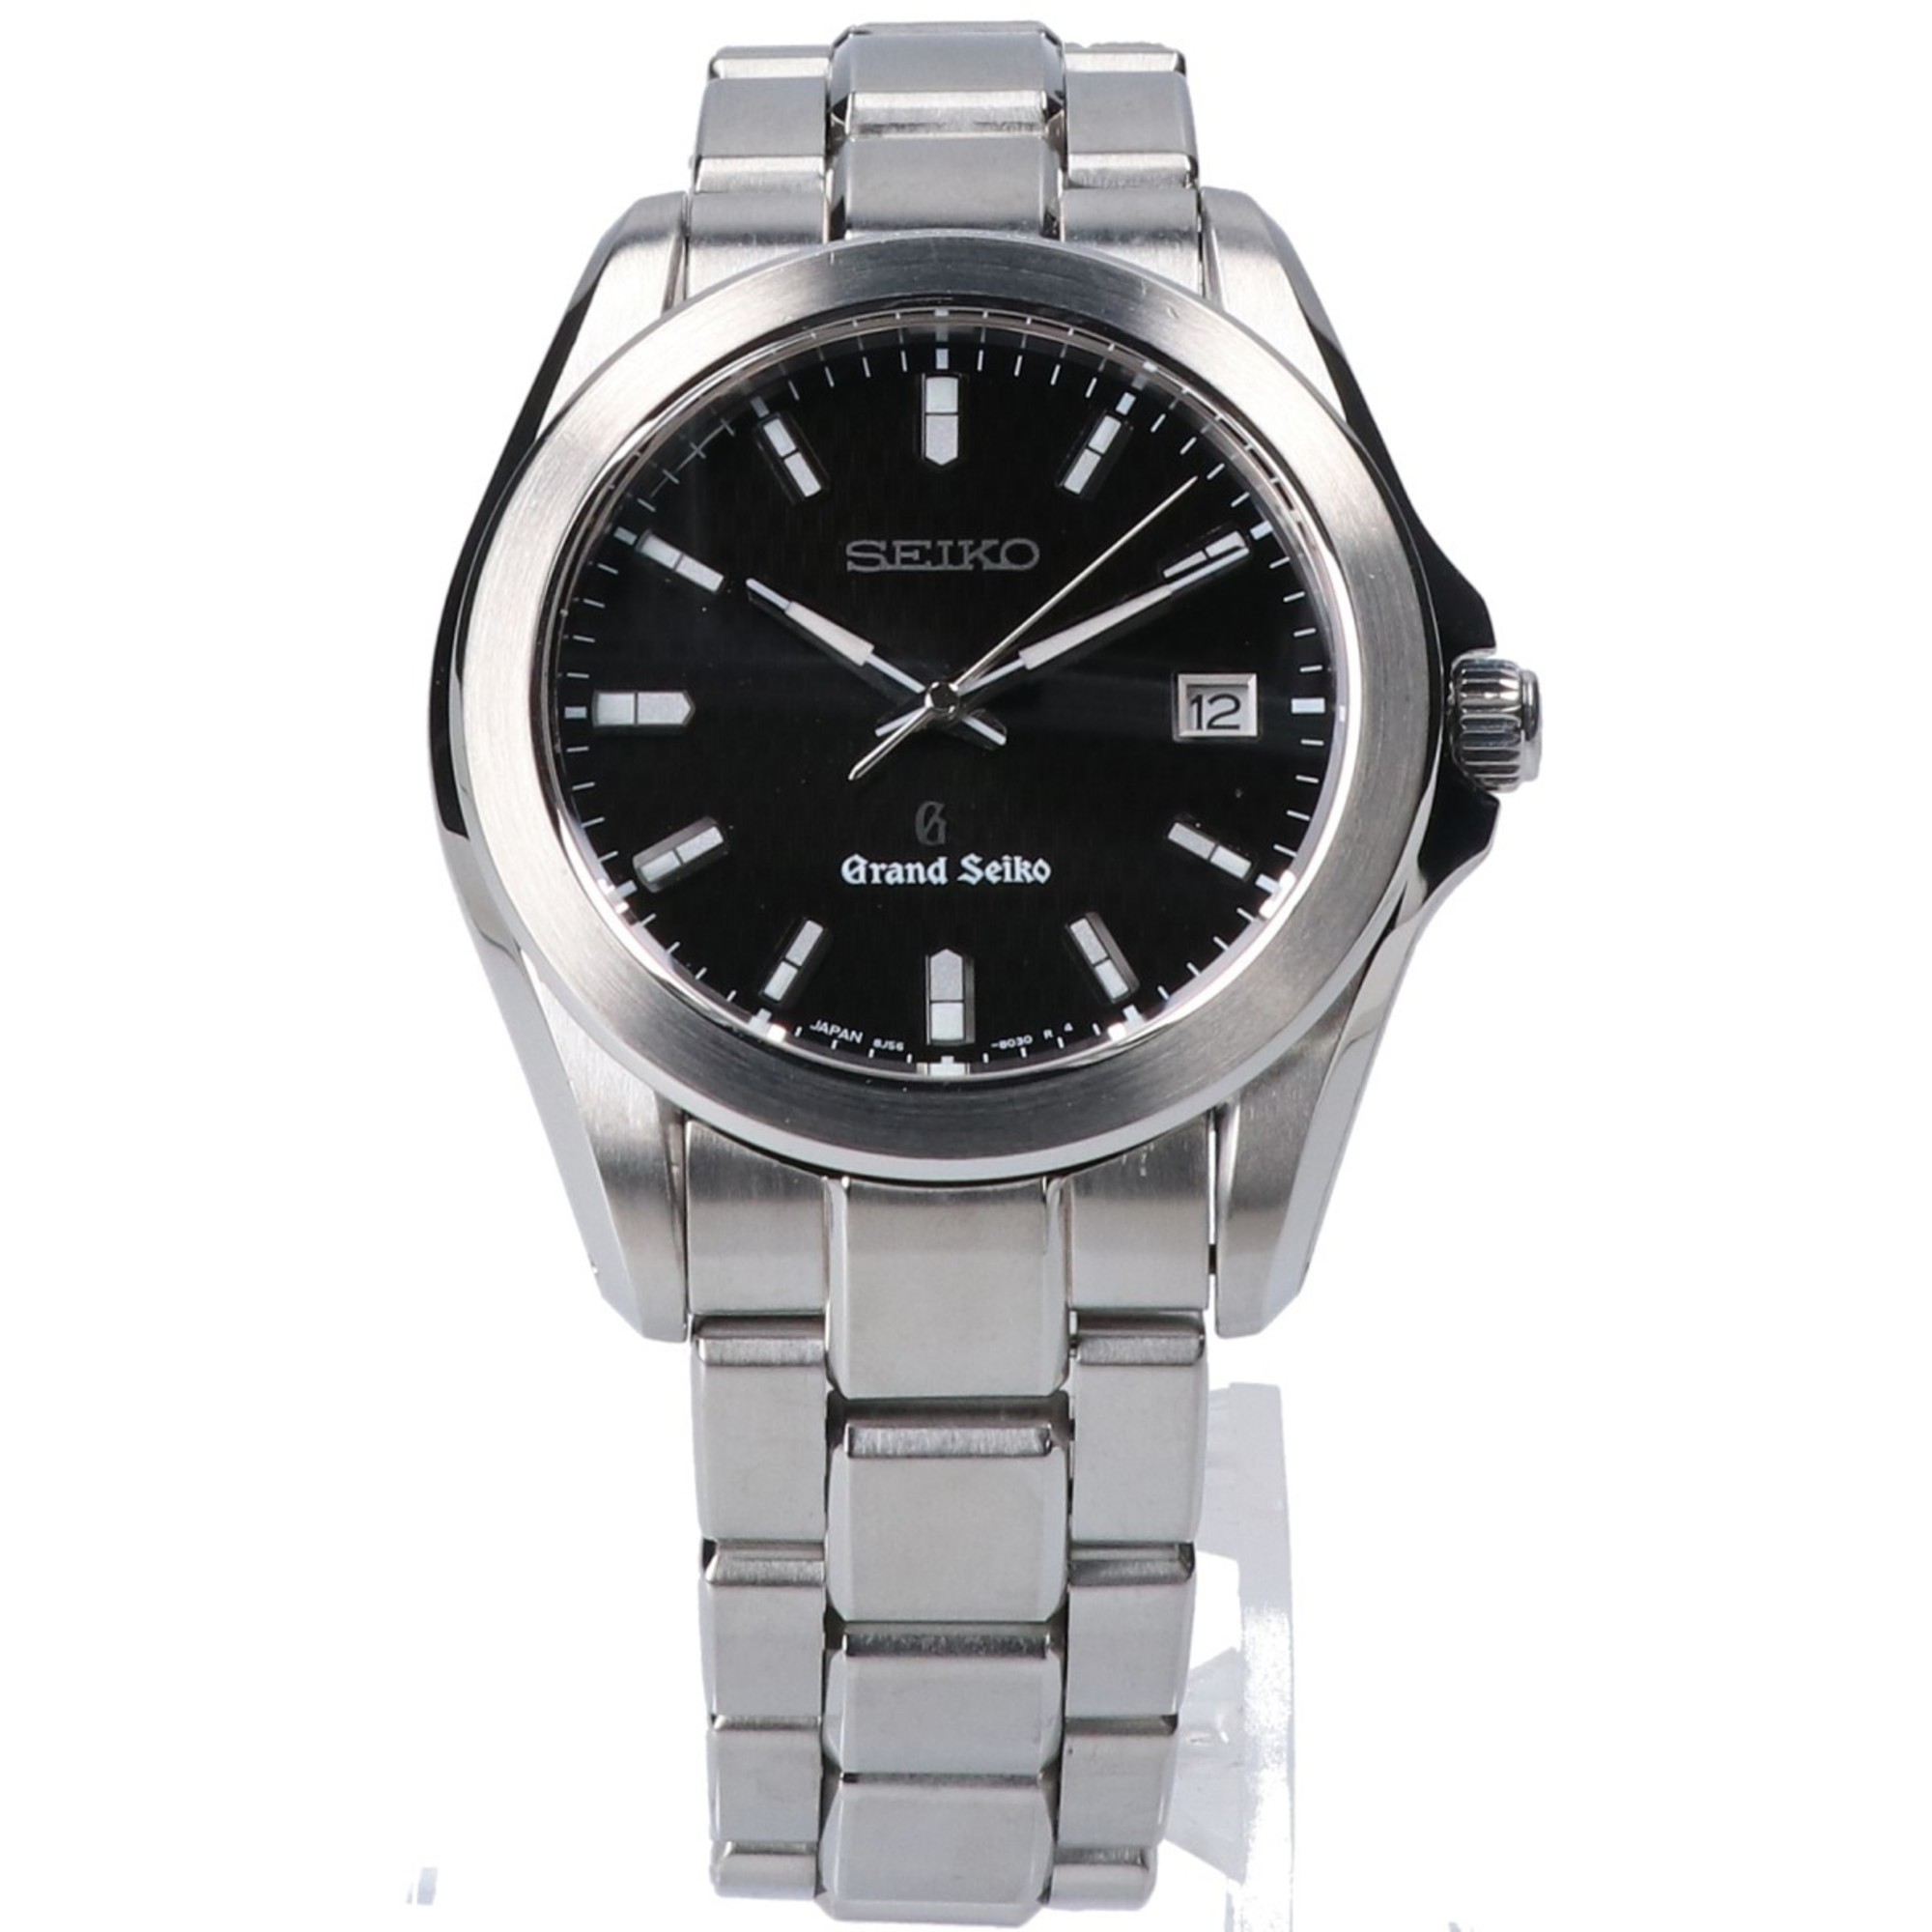 Grand Seiko 8J56-8020 Date Quartz Watch Silver Men's